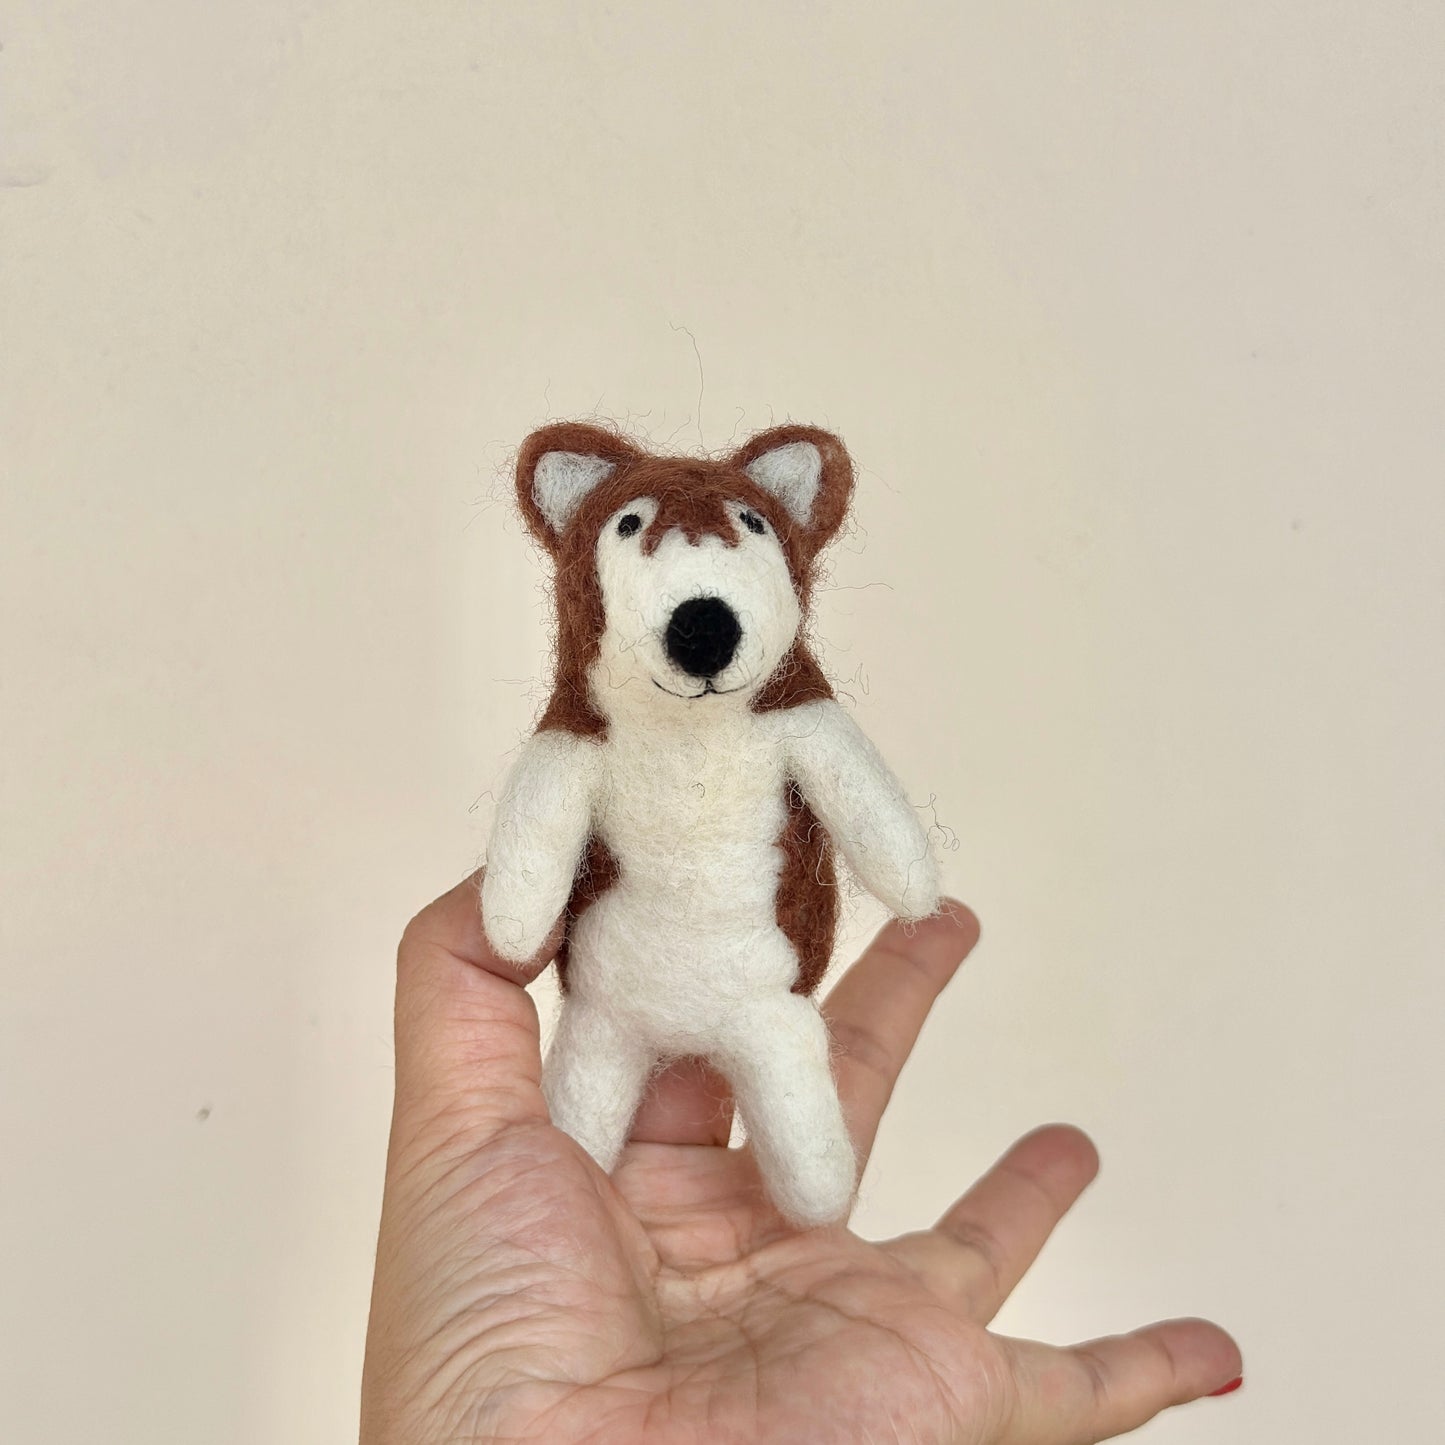 Felt Finger Puppet - Alaskan Husky Dog